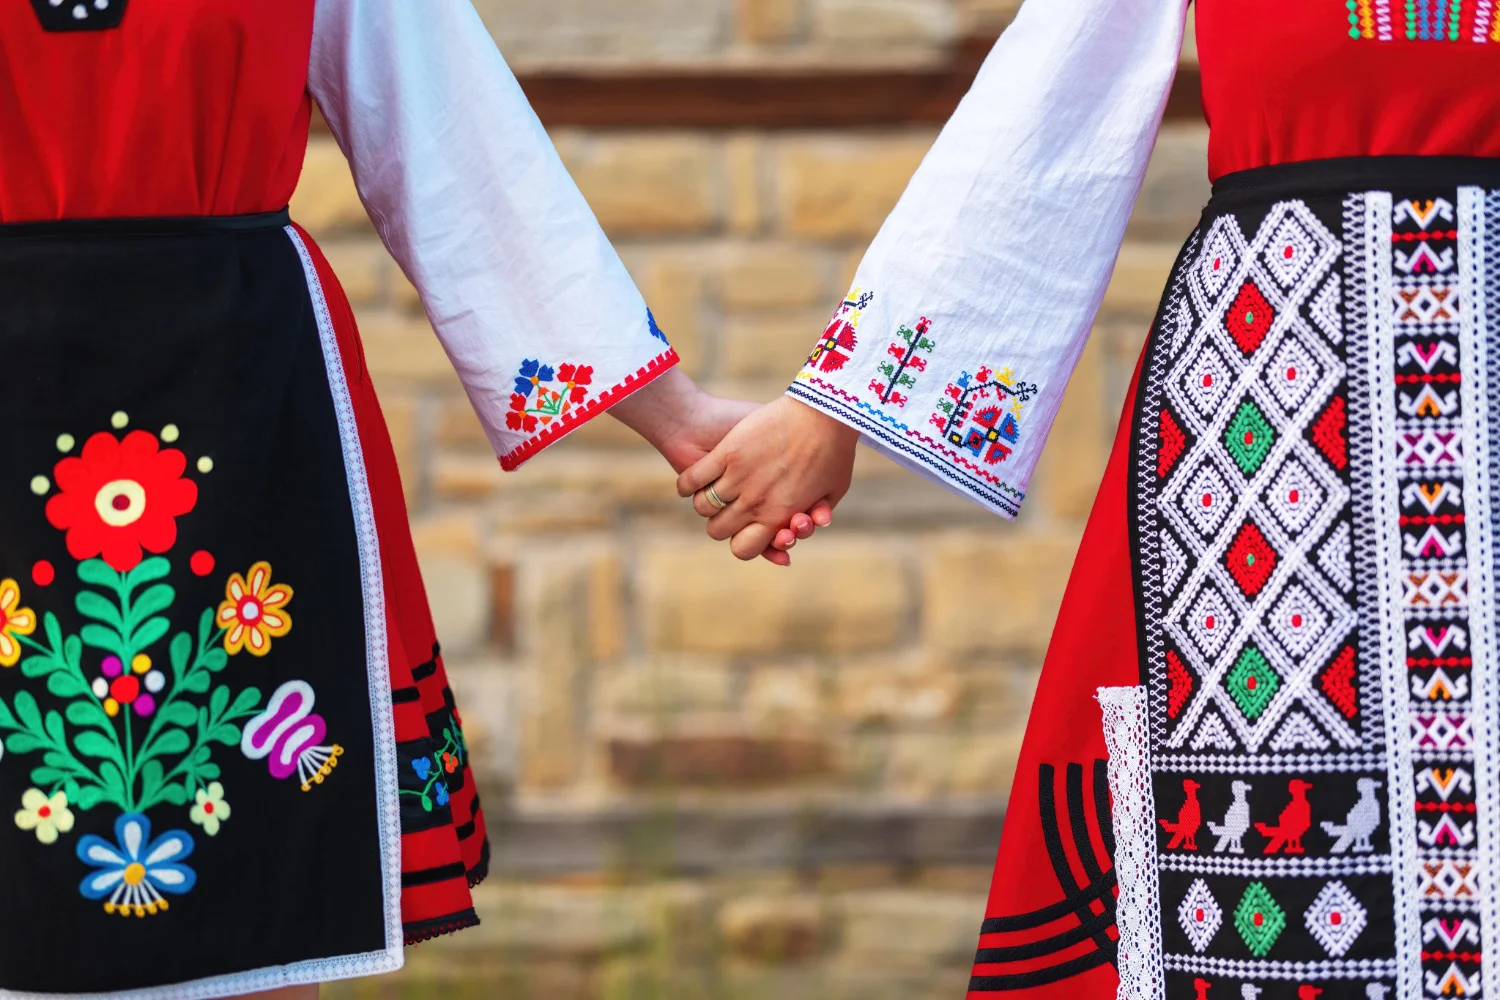 Les initiatives culturelles transfrontalières favorisent la compréhension par le dialogue, tout en valorisant le patrimoine et les traditions des deux nations, la Bulgarie et la Serbie